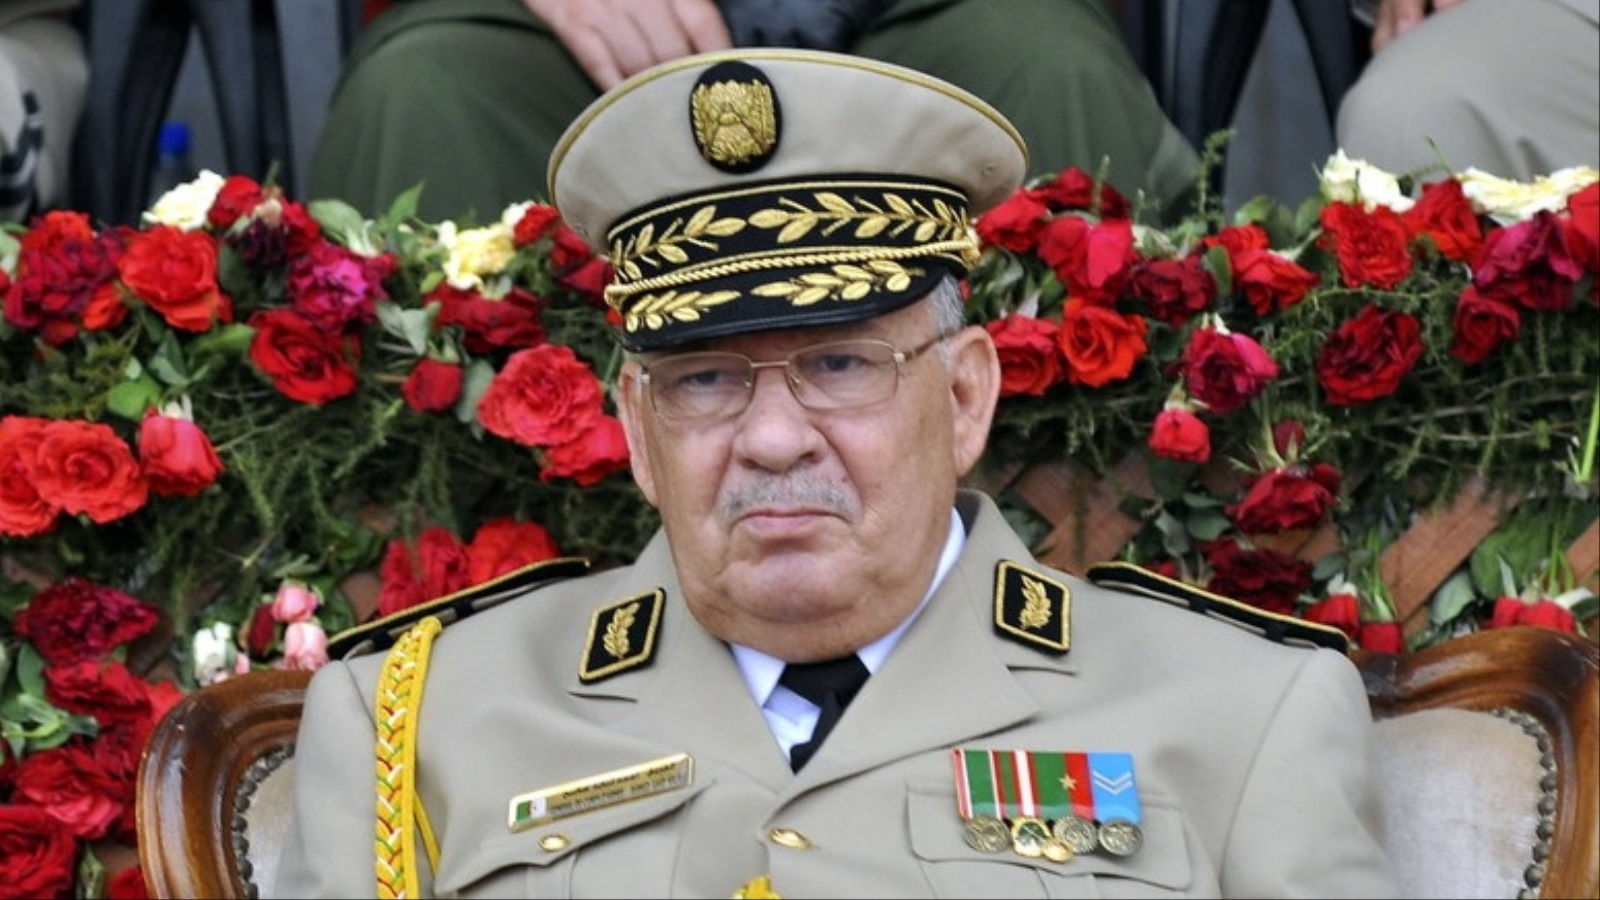  قايد صالح أصبح أول المستهدفين بشعارات الثوار خاصة بعد إصراره على إجراء الانتخابات الرئاسية في موعدها (الأوروبية)